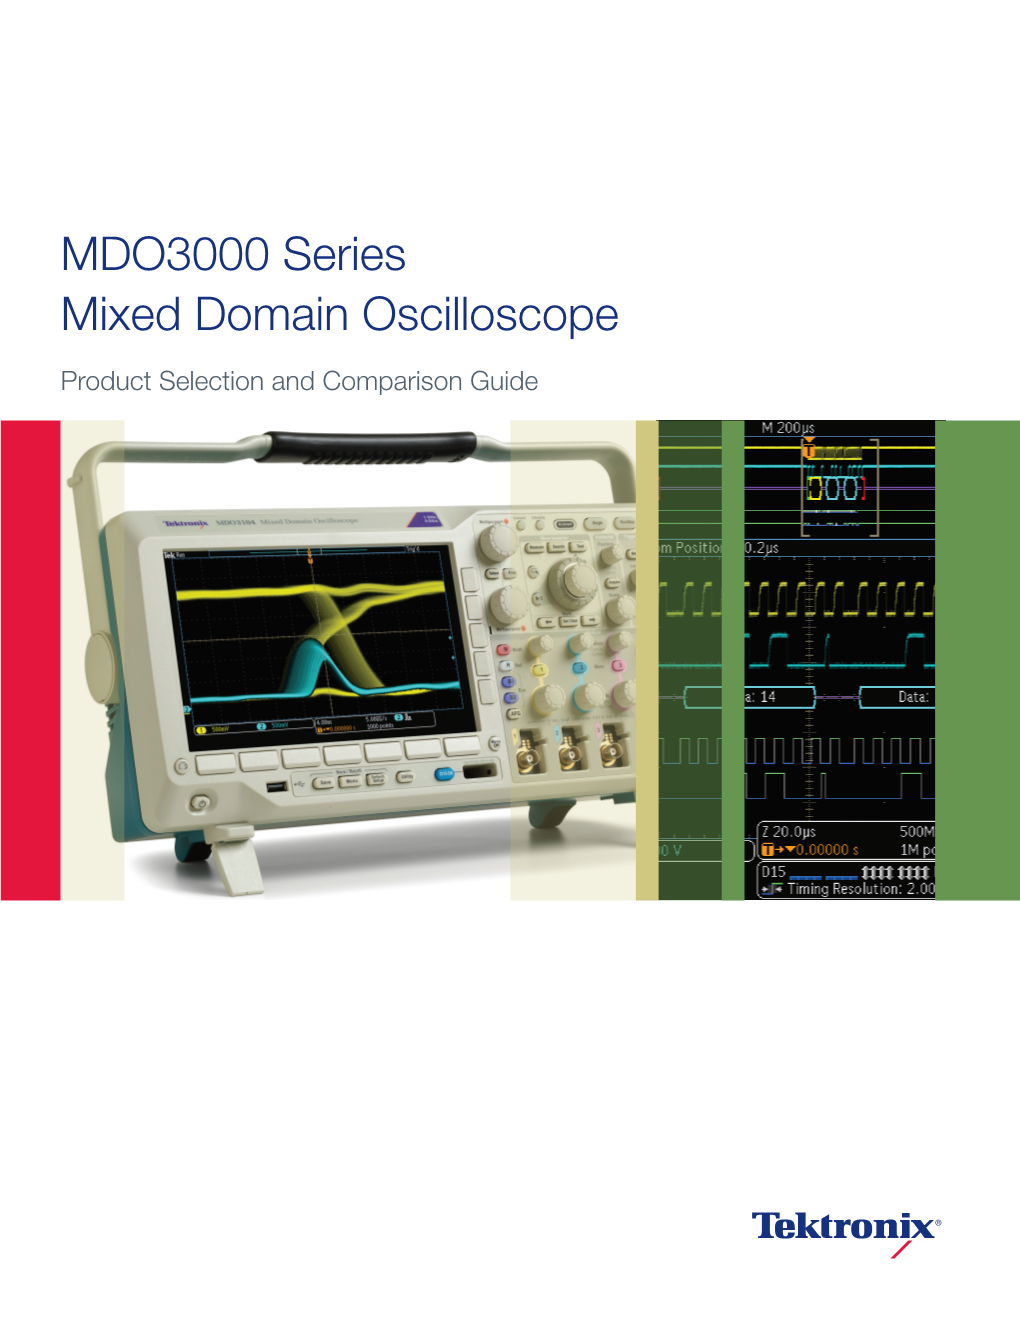 MDO3000 Series Mixed Domain Oscilloscope